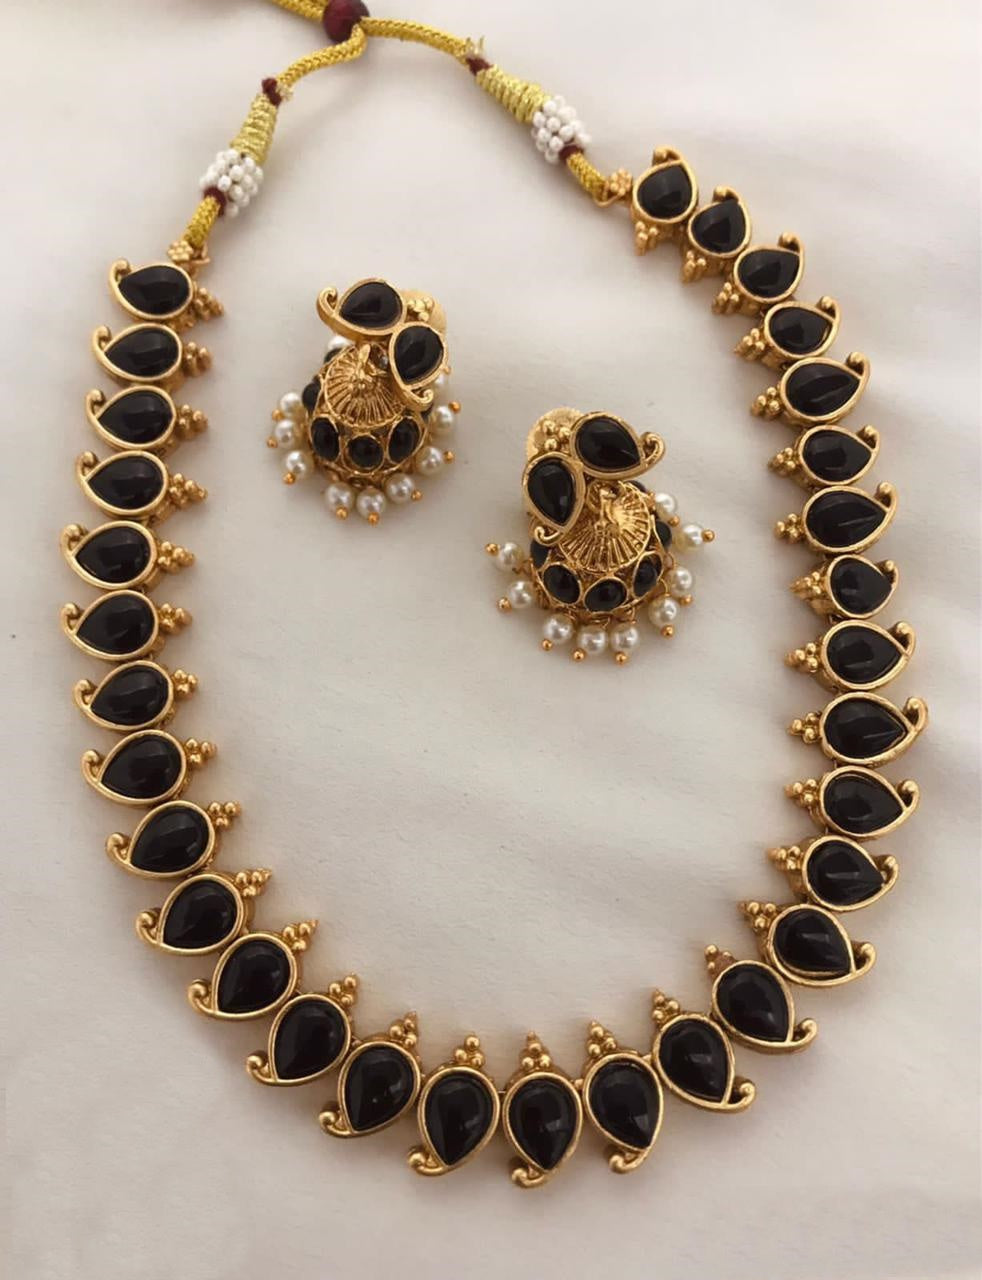 Big Love Necklace | Jeny Baker Designs